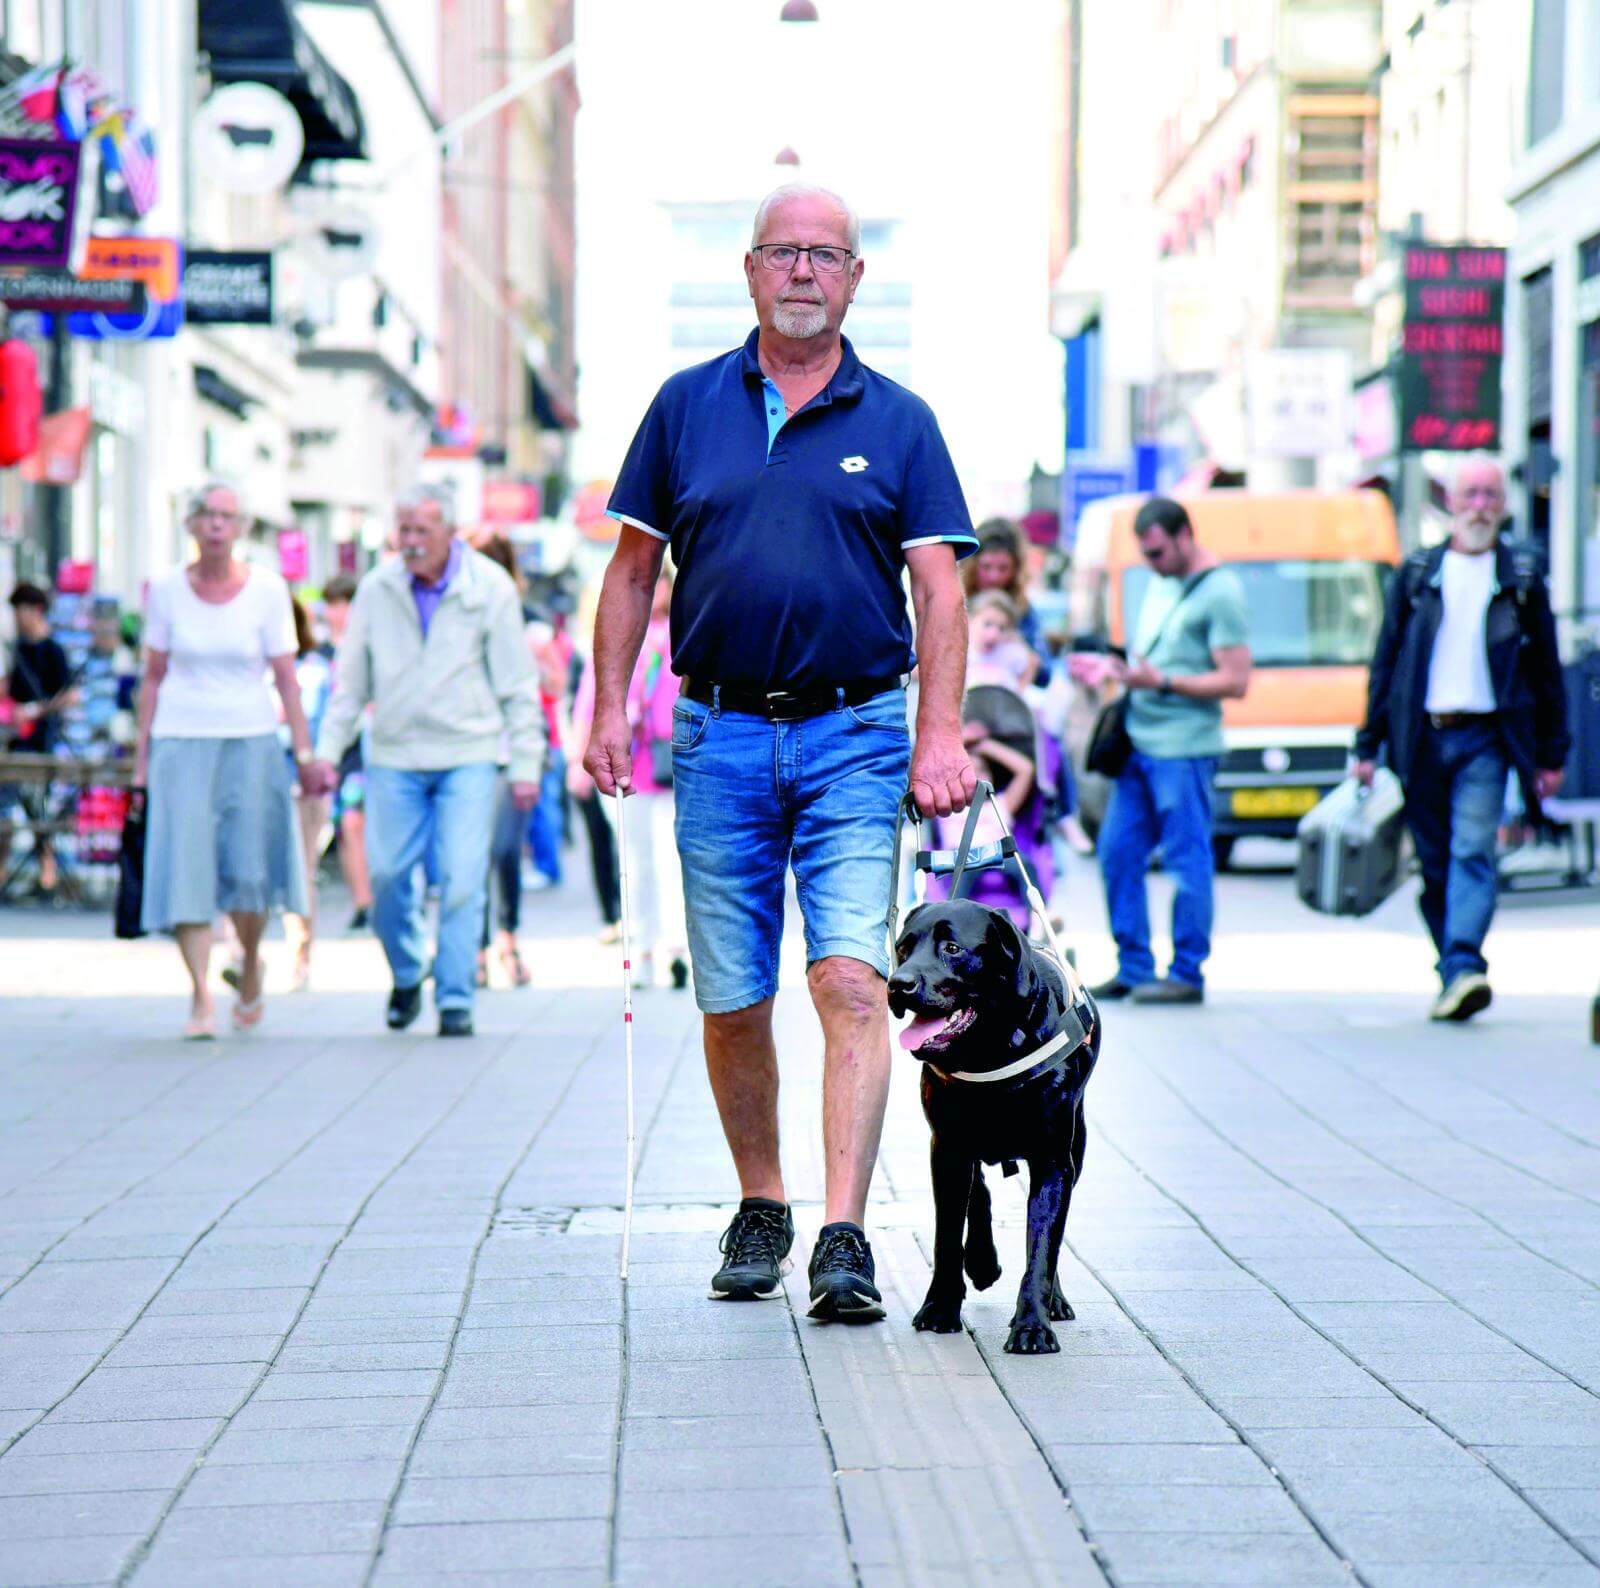 Førerhundeinstruktør og førerhunden Sigurd på tur i byen